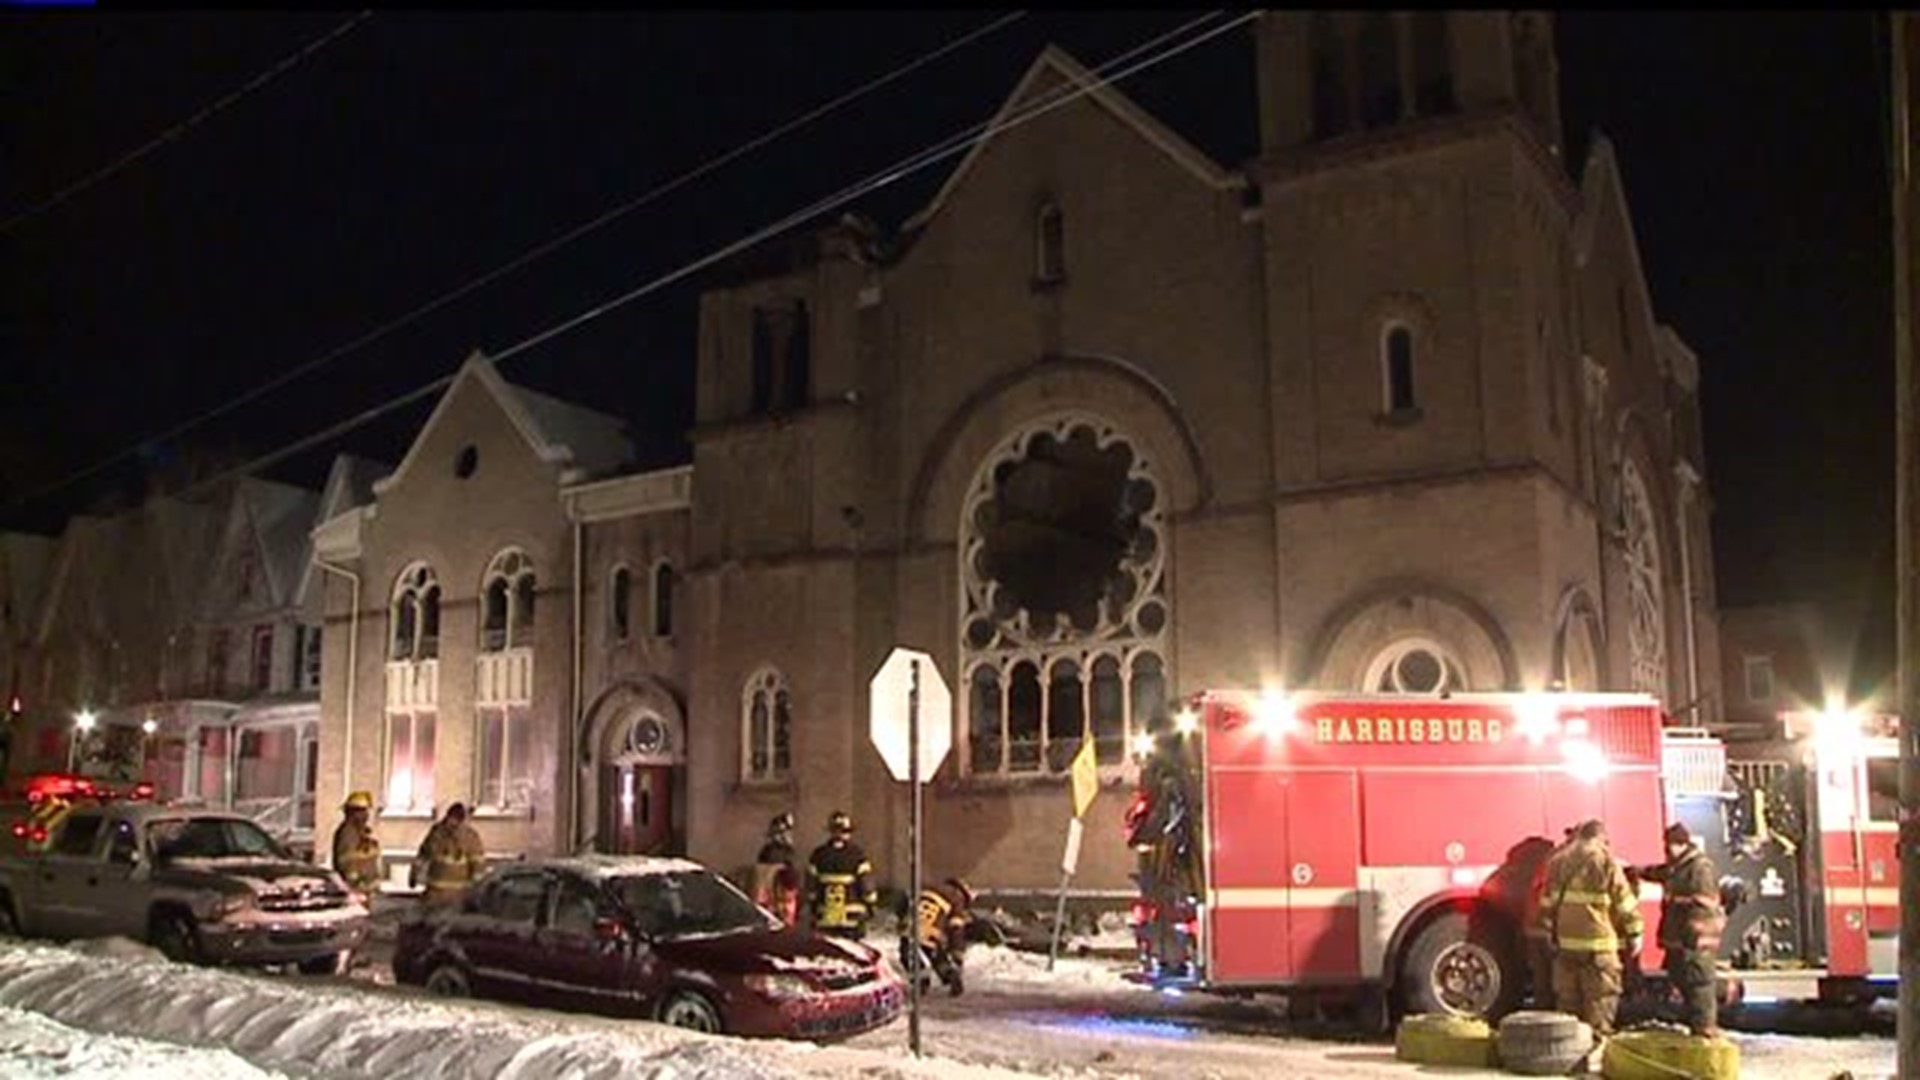 Crews battle fire at a Church in Harrisburg